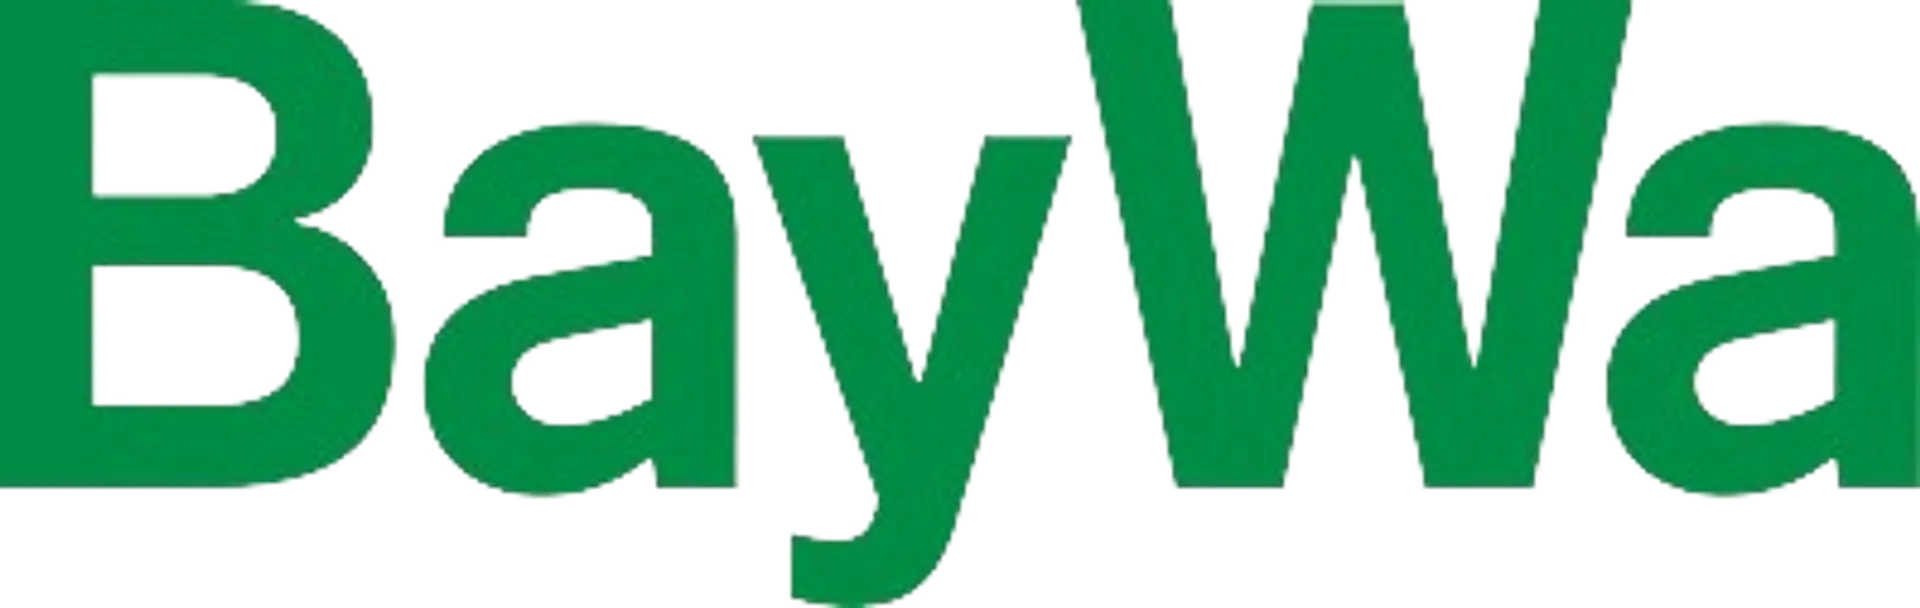 BAYWA logo die aktuell Flugblatt